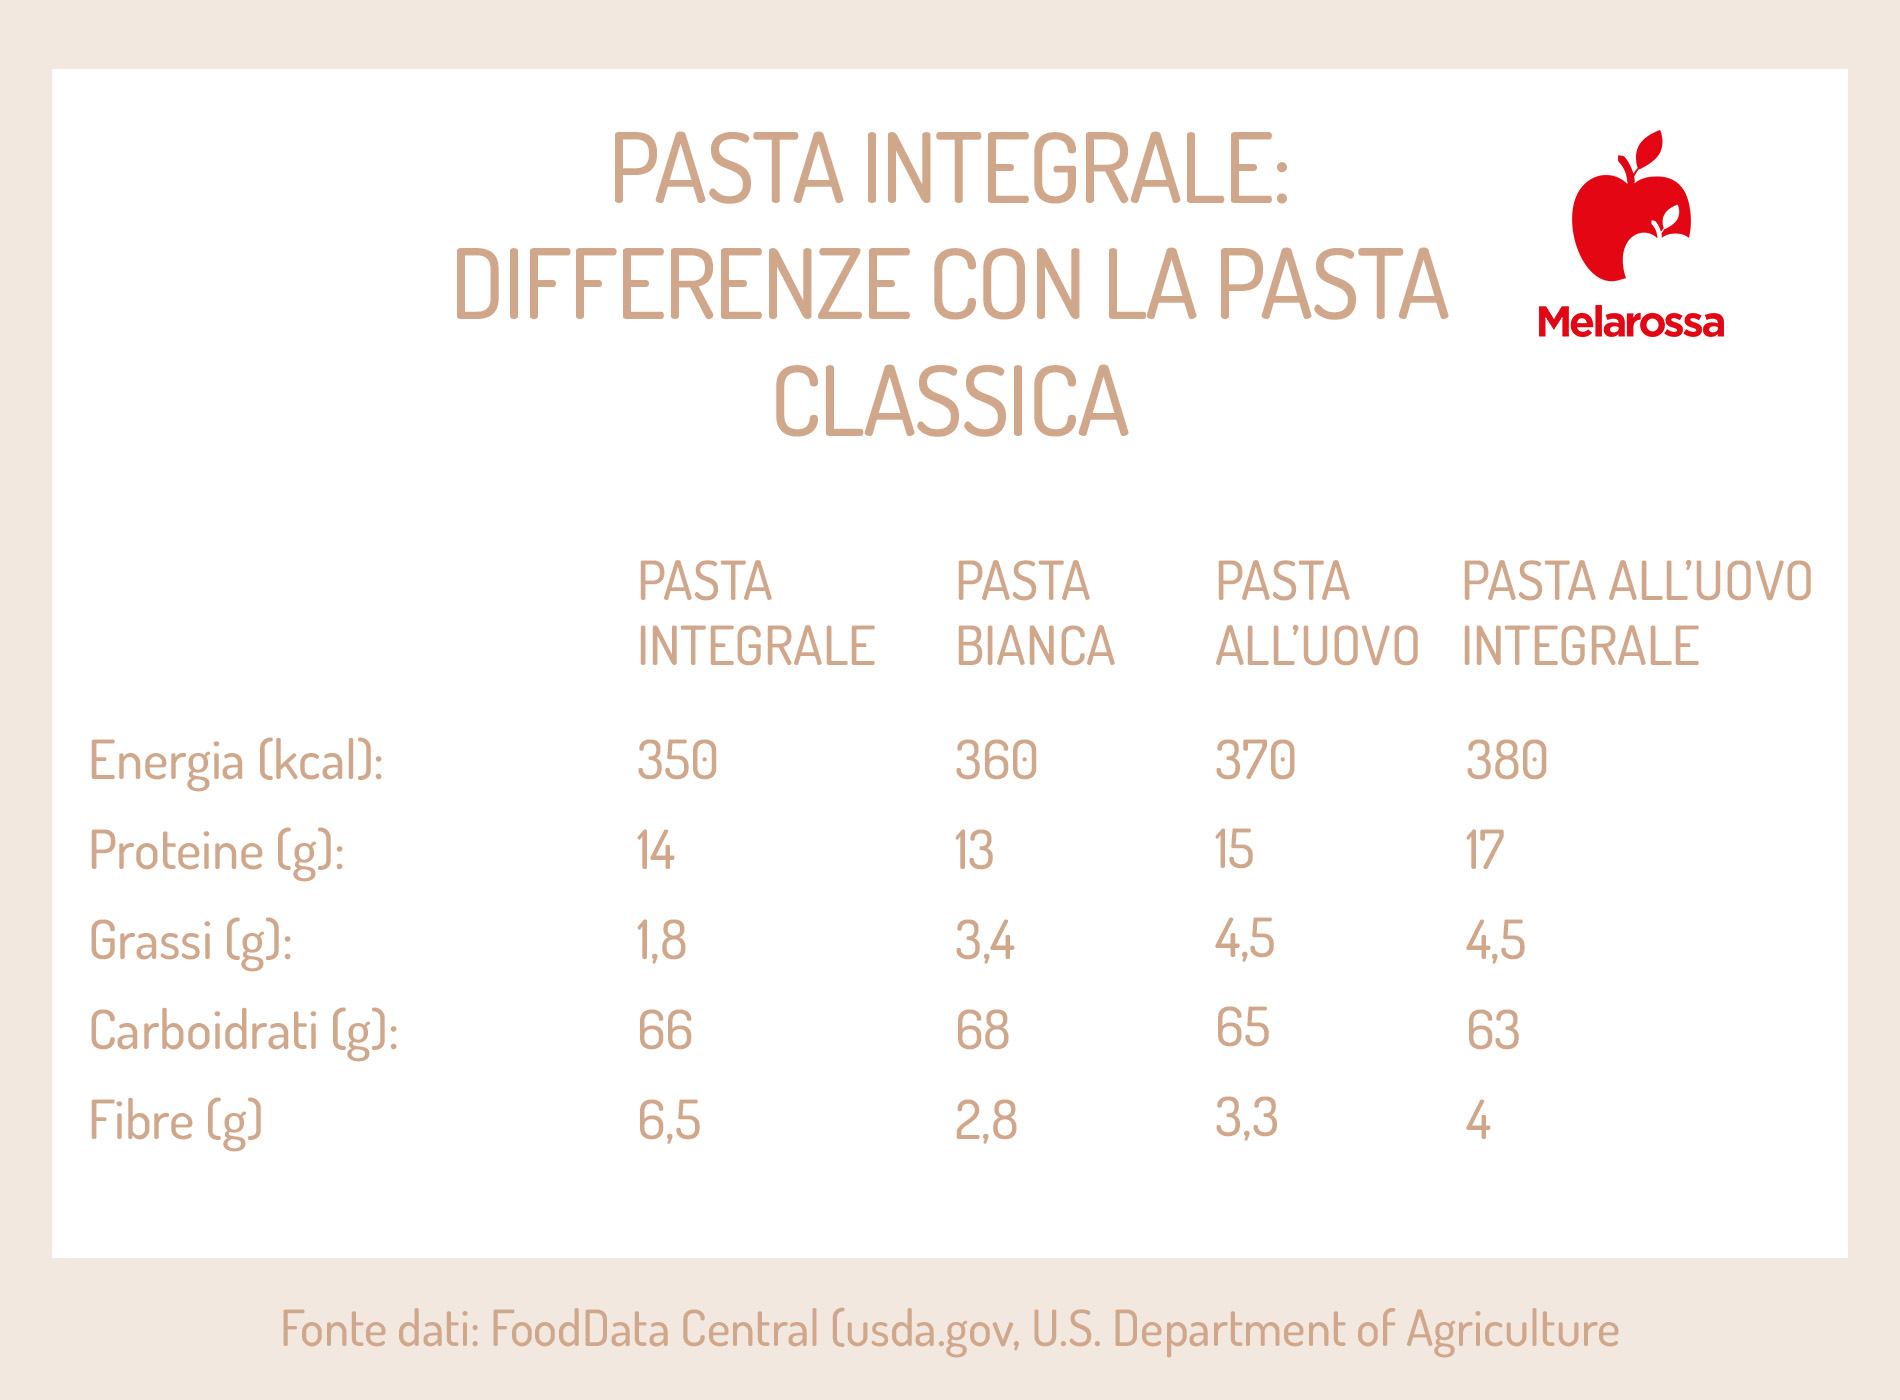 pasta integrale: differenze con la pasta classica